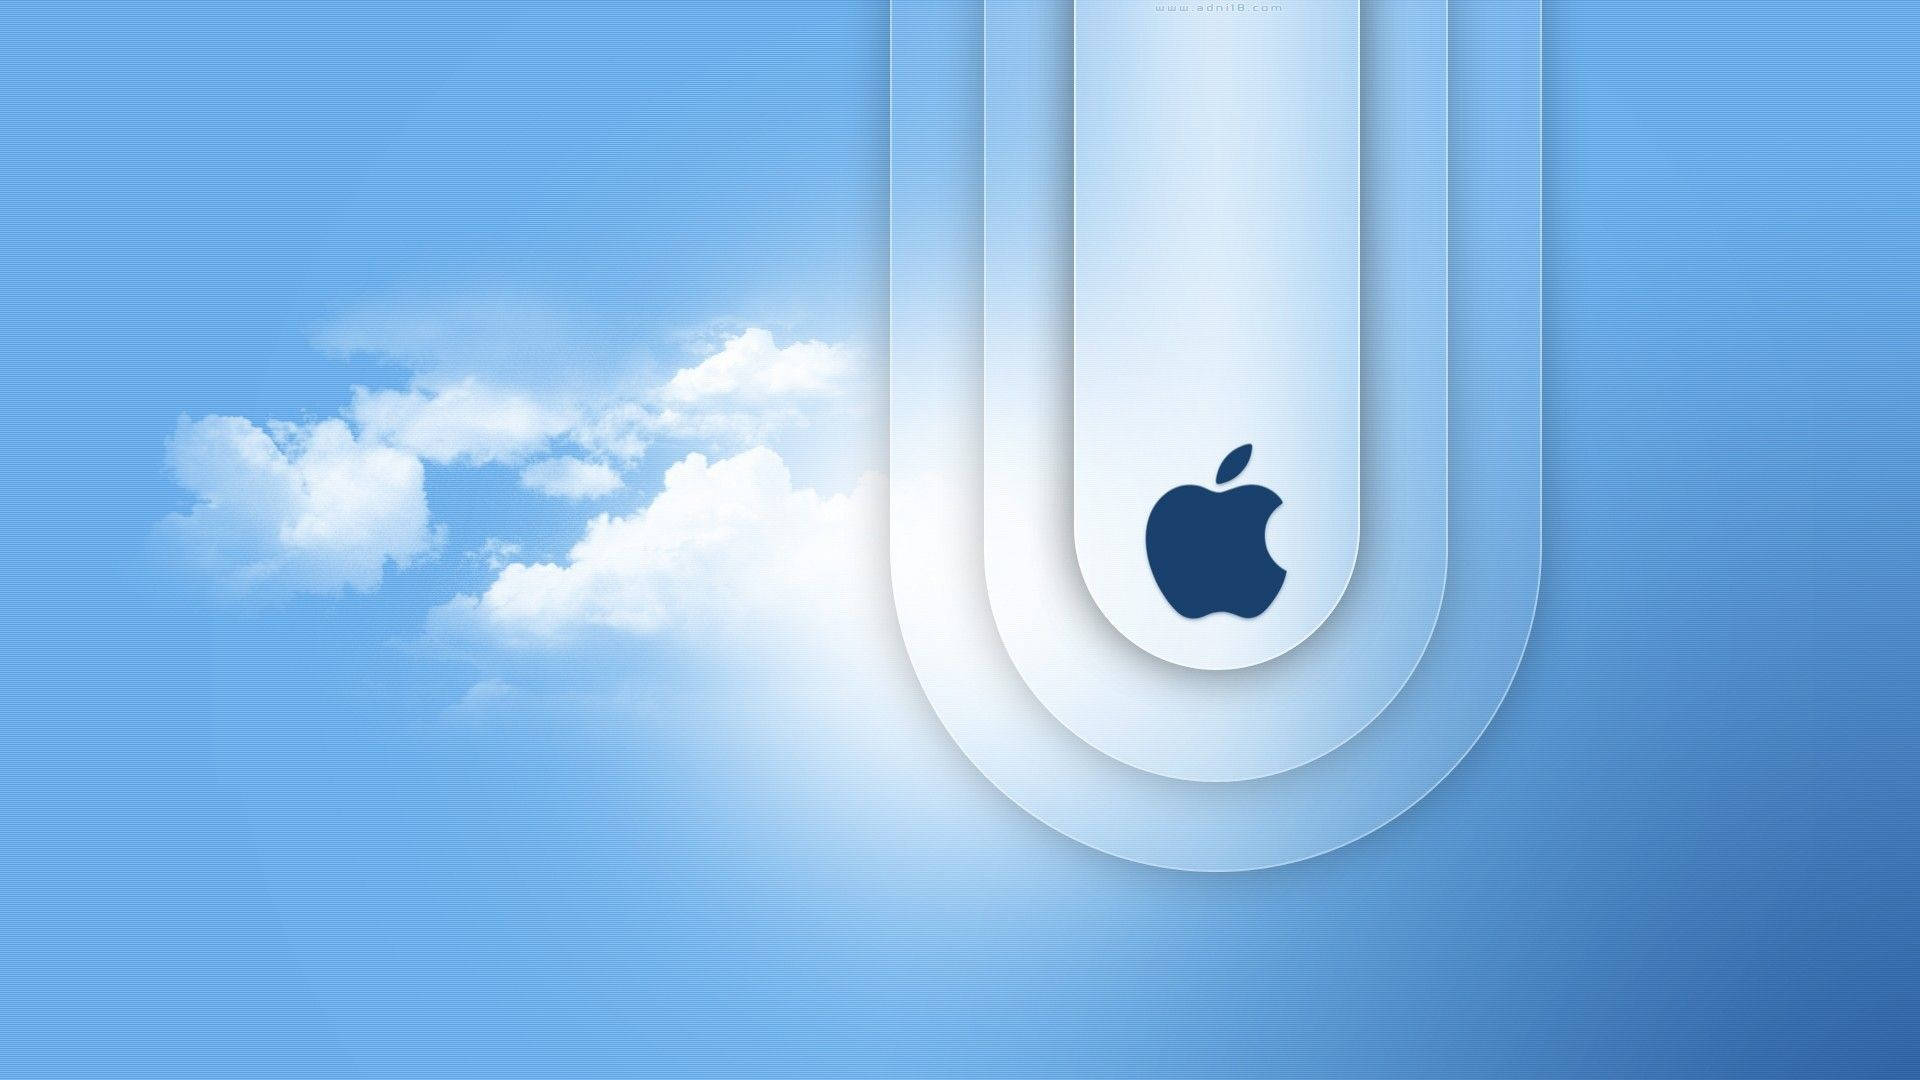 Macbook Air Logo In Clouds